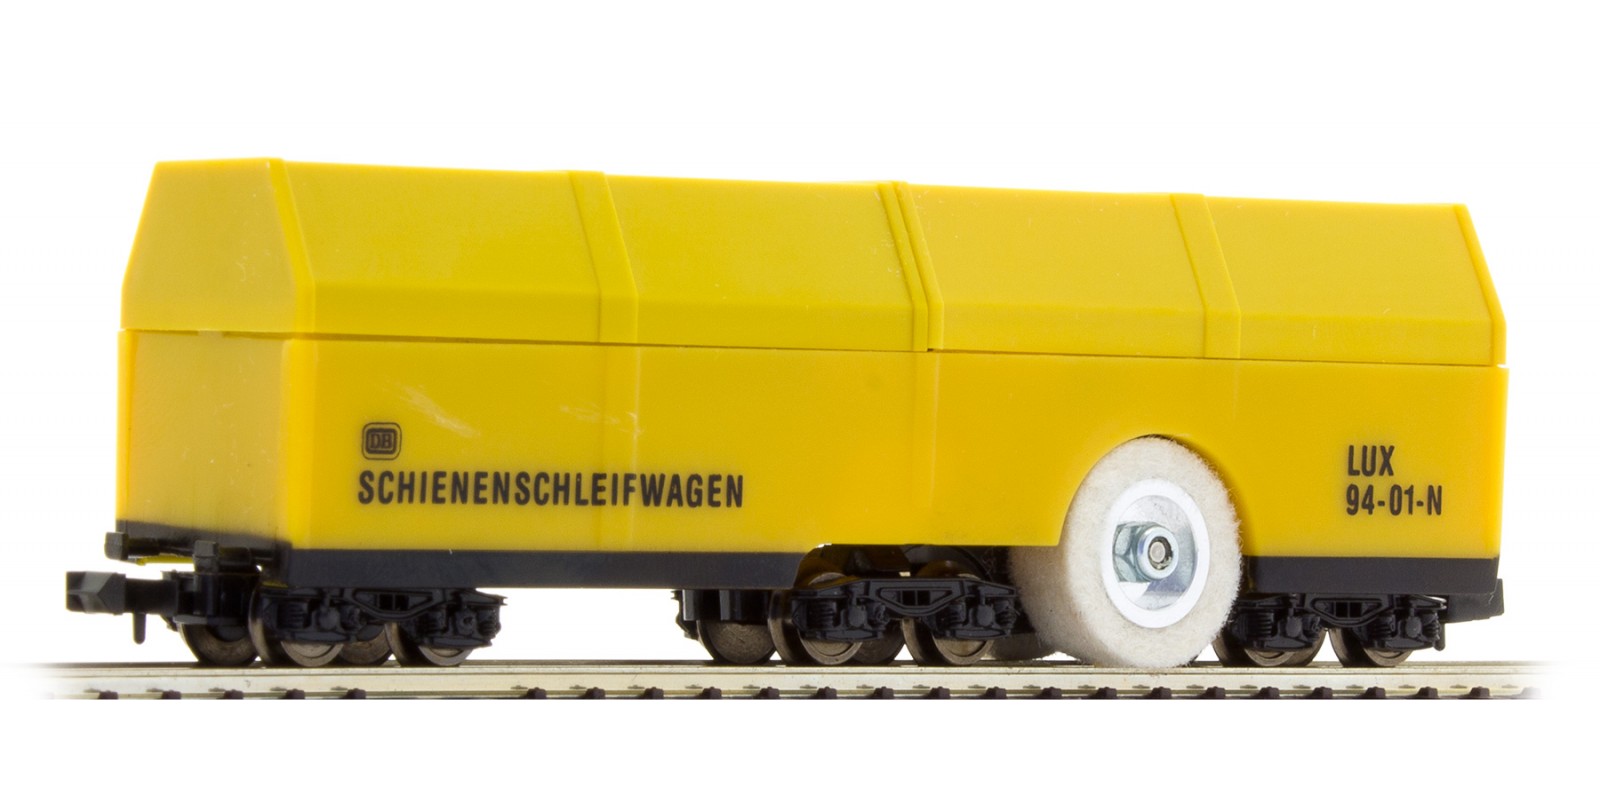 LUX9470 N-Doppelpack  Schienenschleifwagen